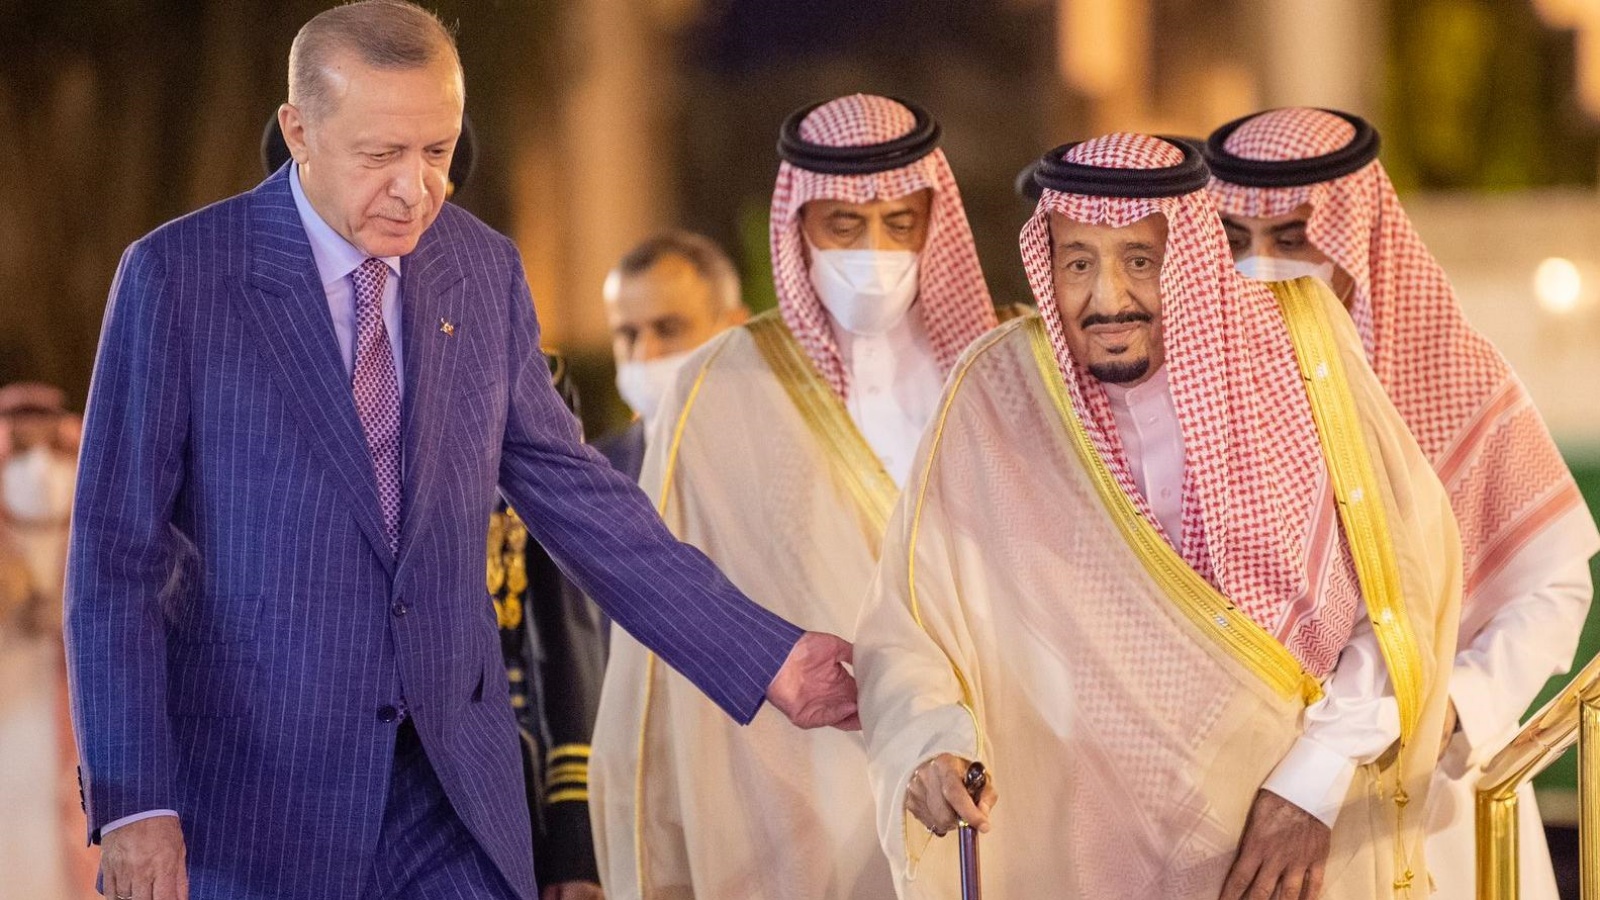 العاهل السعودي الملك سلمان بن عبد العزيز مستقبلاً الرئيس التركي رجب طيب إردوغان في قصر السلام بجدة مساء 28 أبريل 2022